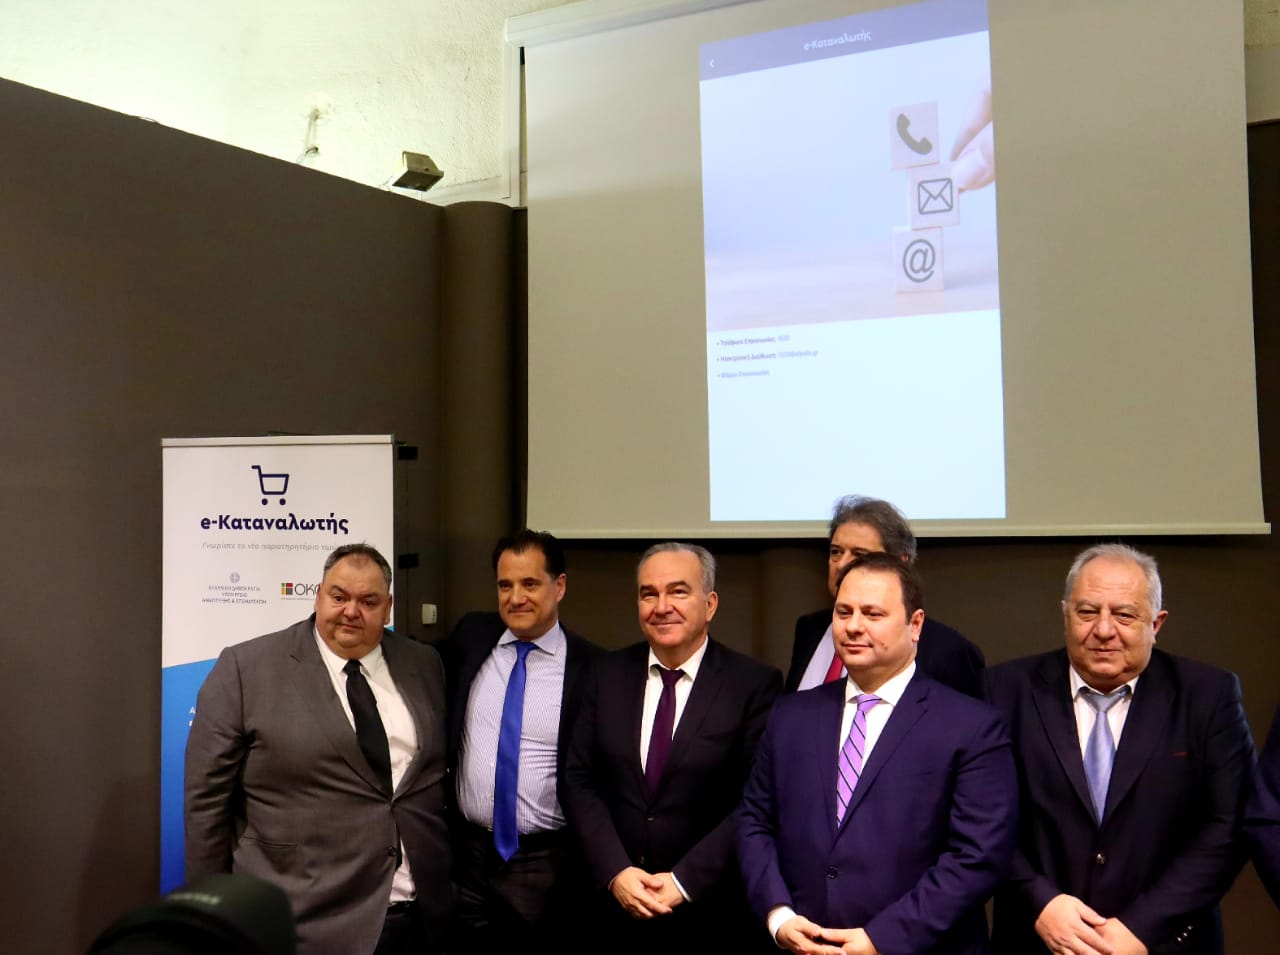 Παρουσίαση της νέας ψηφιακής εφαρμογής e-katanalotis από την πολιτική ηγεσία του Υπουργείου Ανάπτυξης & Επενδύσεων και τον ΟΚΑΑ